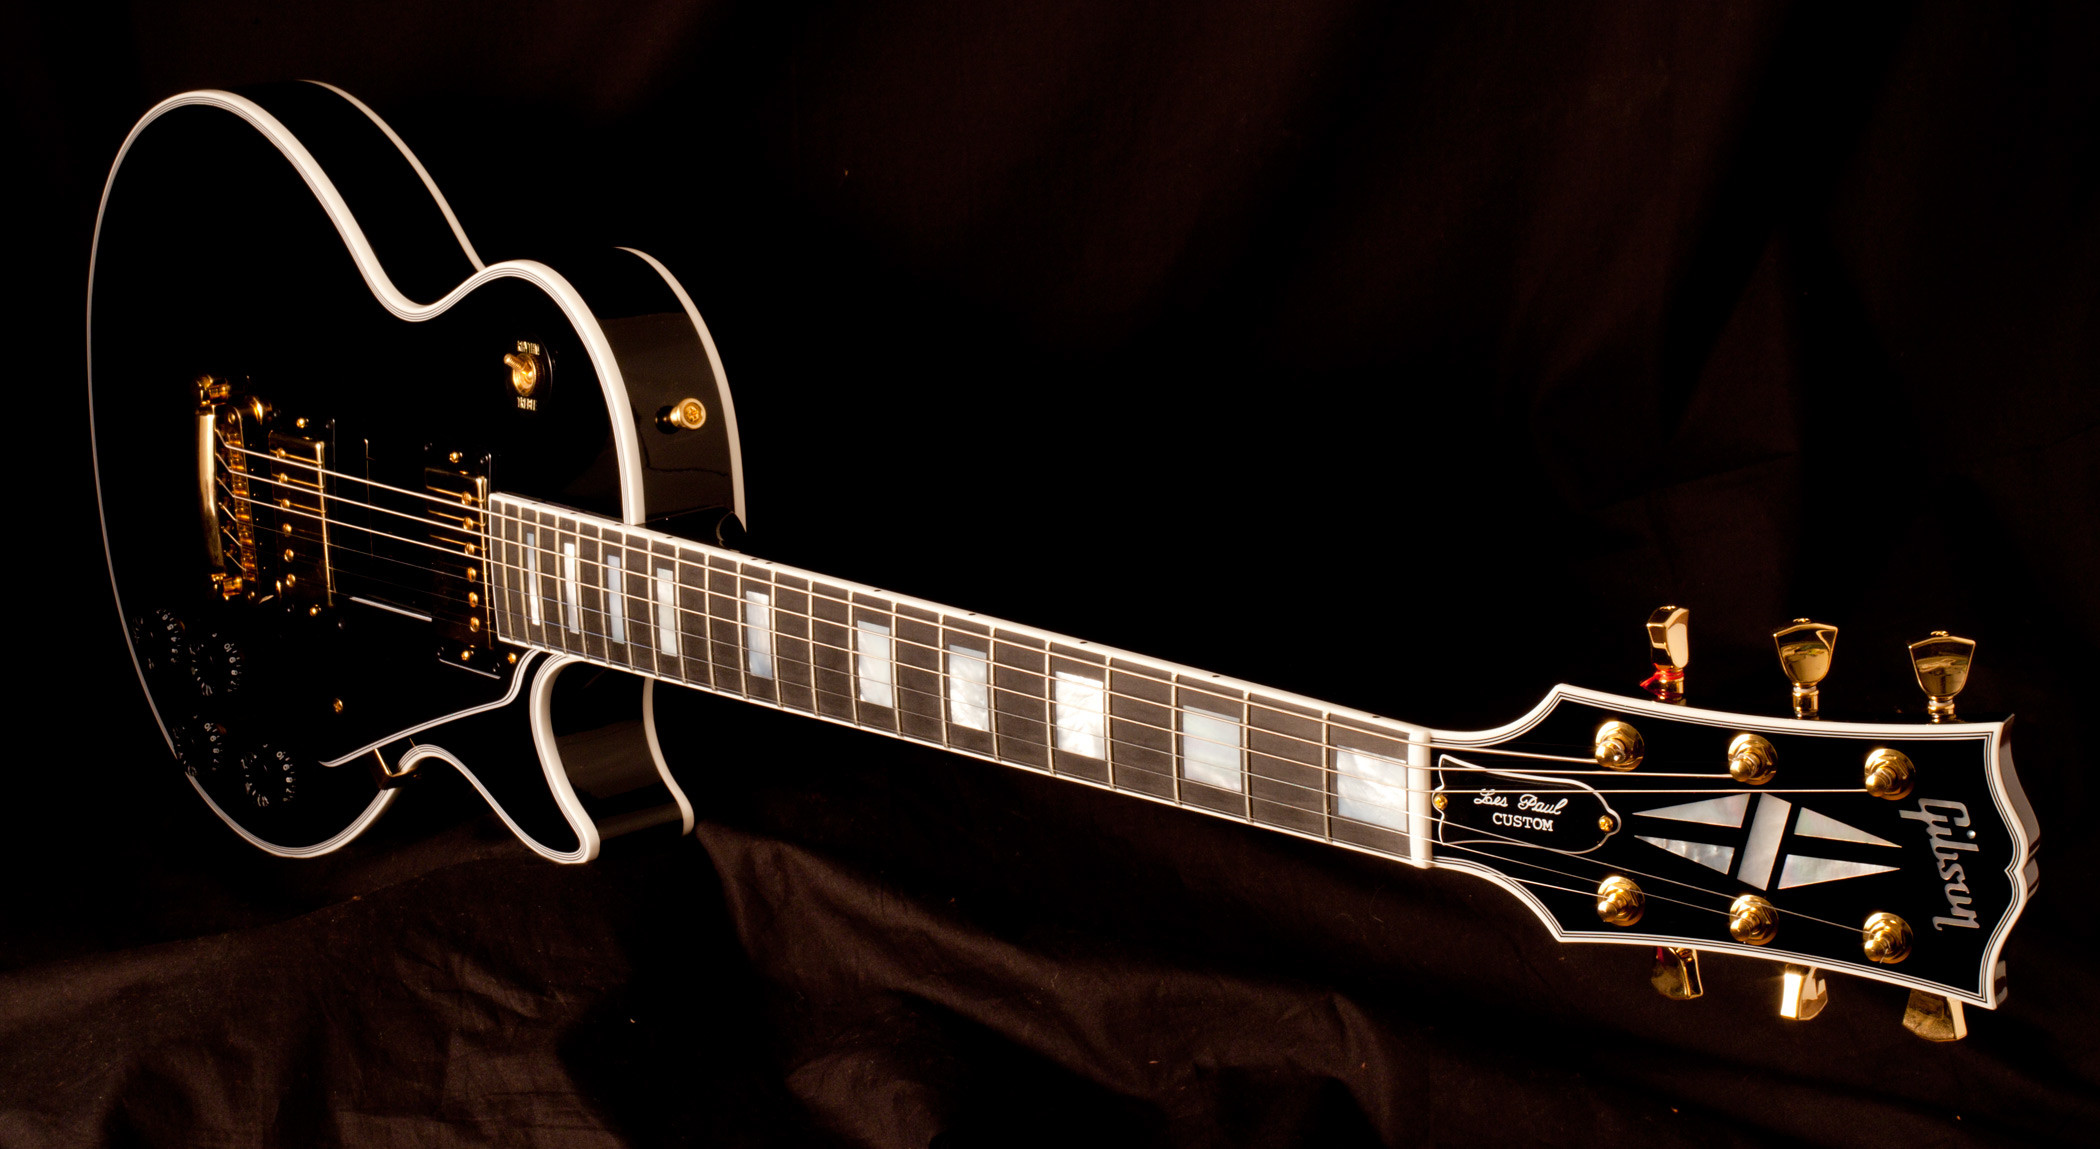 2100x1149 Gibson Les Paul HD Wallpaper | Wallpapers | Pinterest | Gibson les .